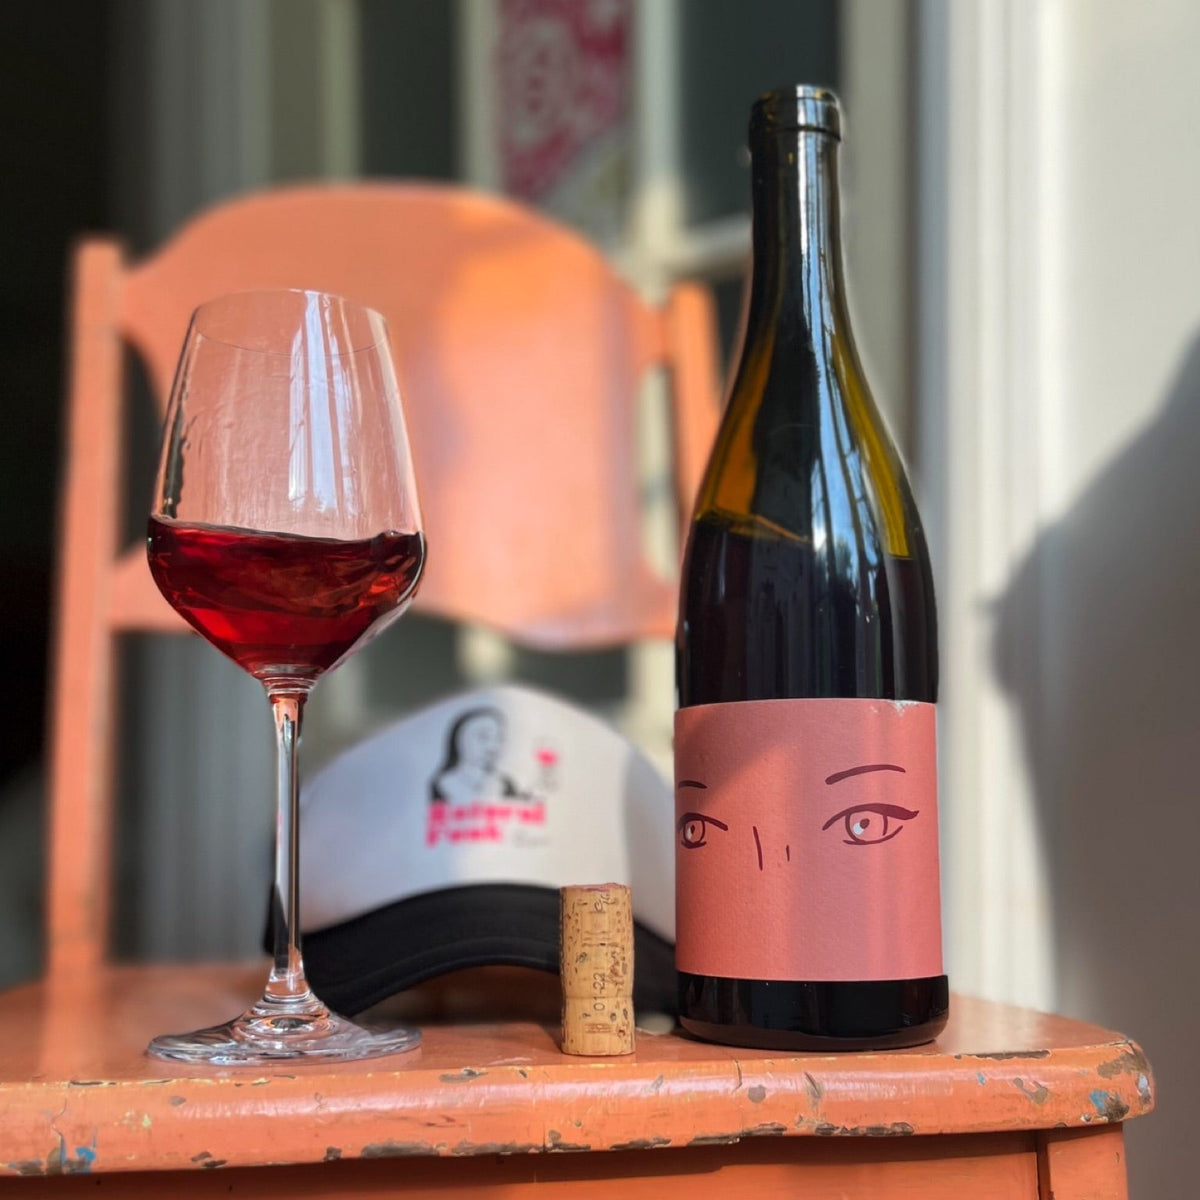 Fatale 2021 - Rouge - Vin des Potes - Le vin dans les voiles